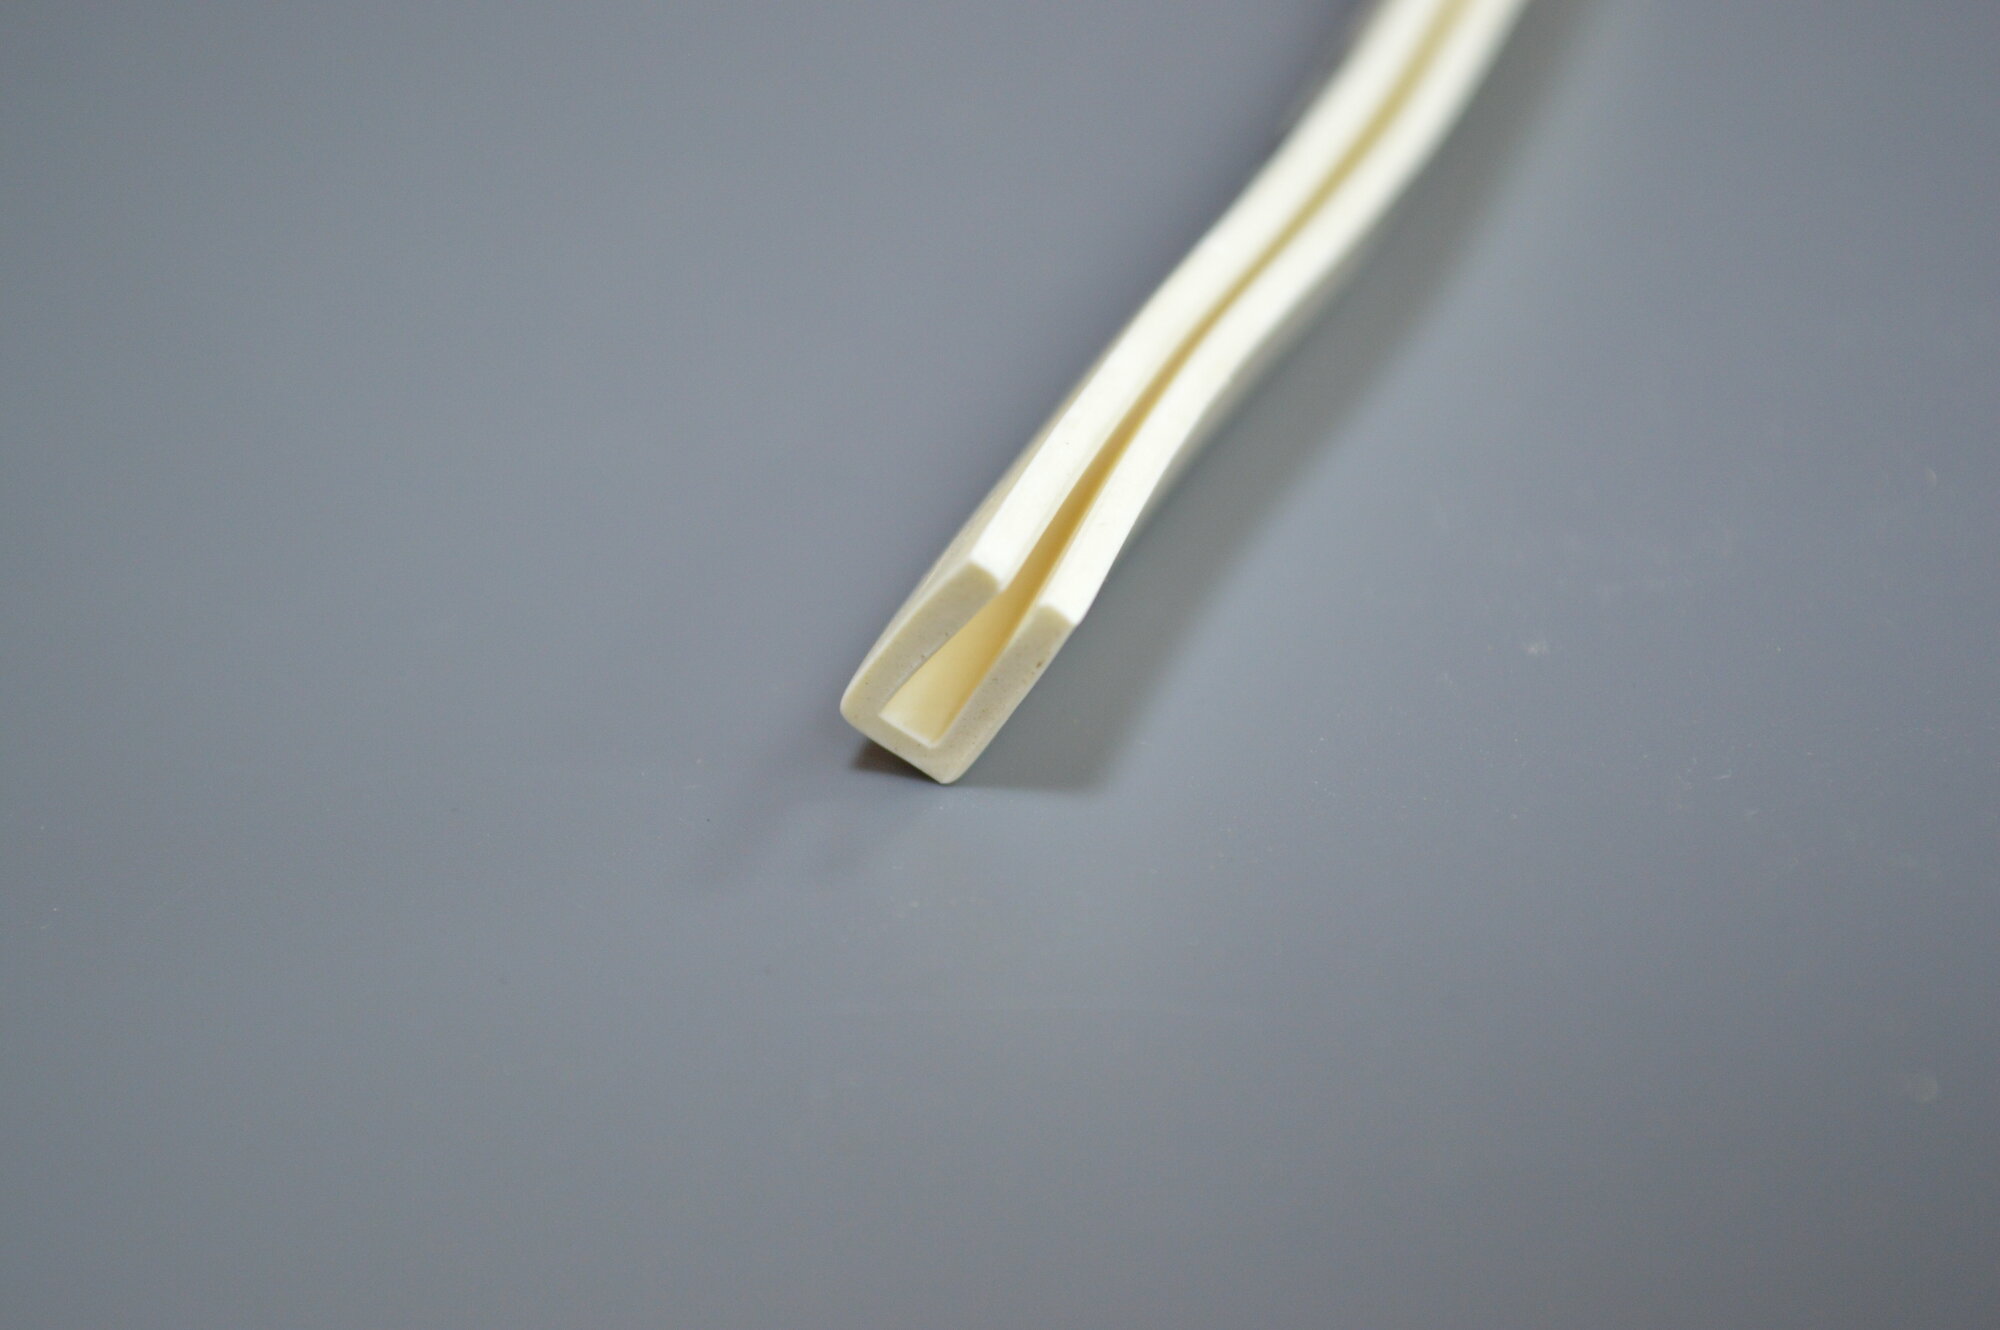 Профиль из силиконовой резины П-образный для уплотнения стекол и метала. Толщина стекла 2 мм. Длина 2 метра.